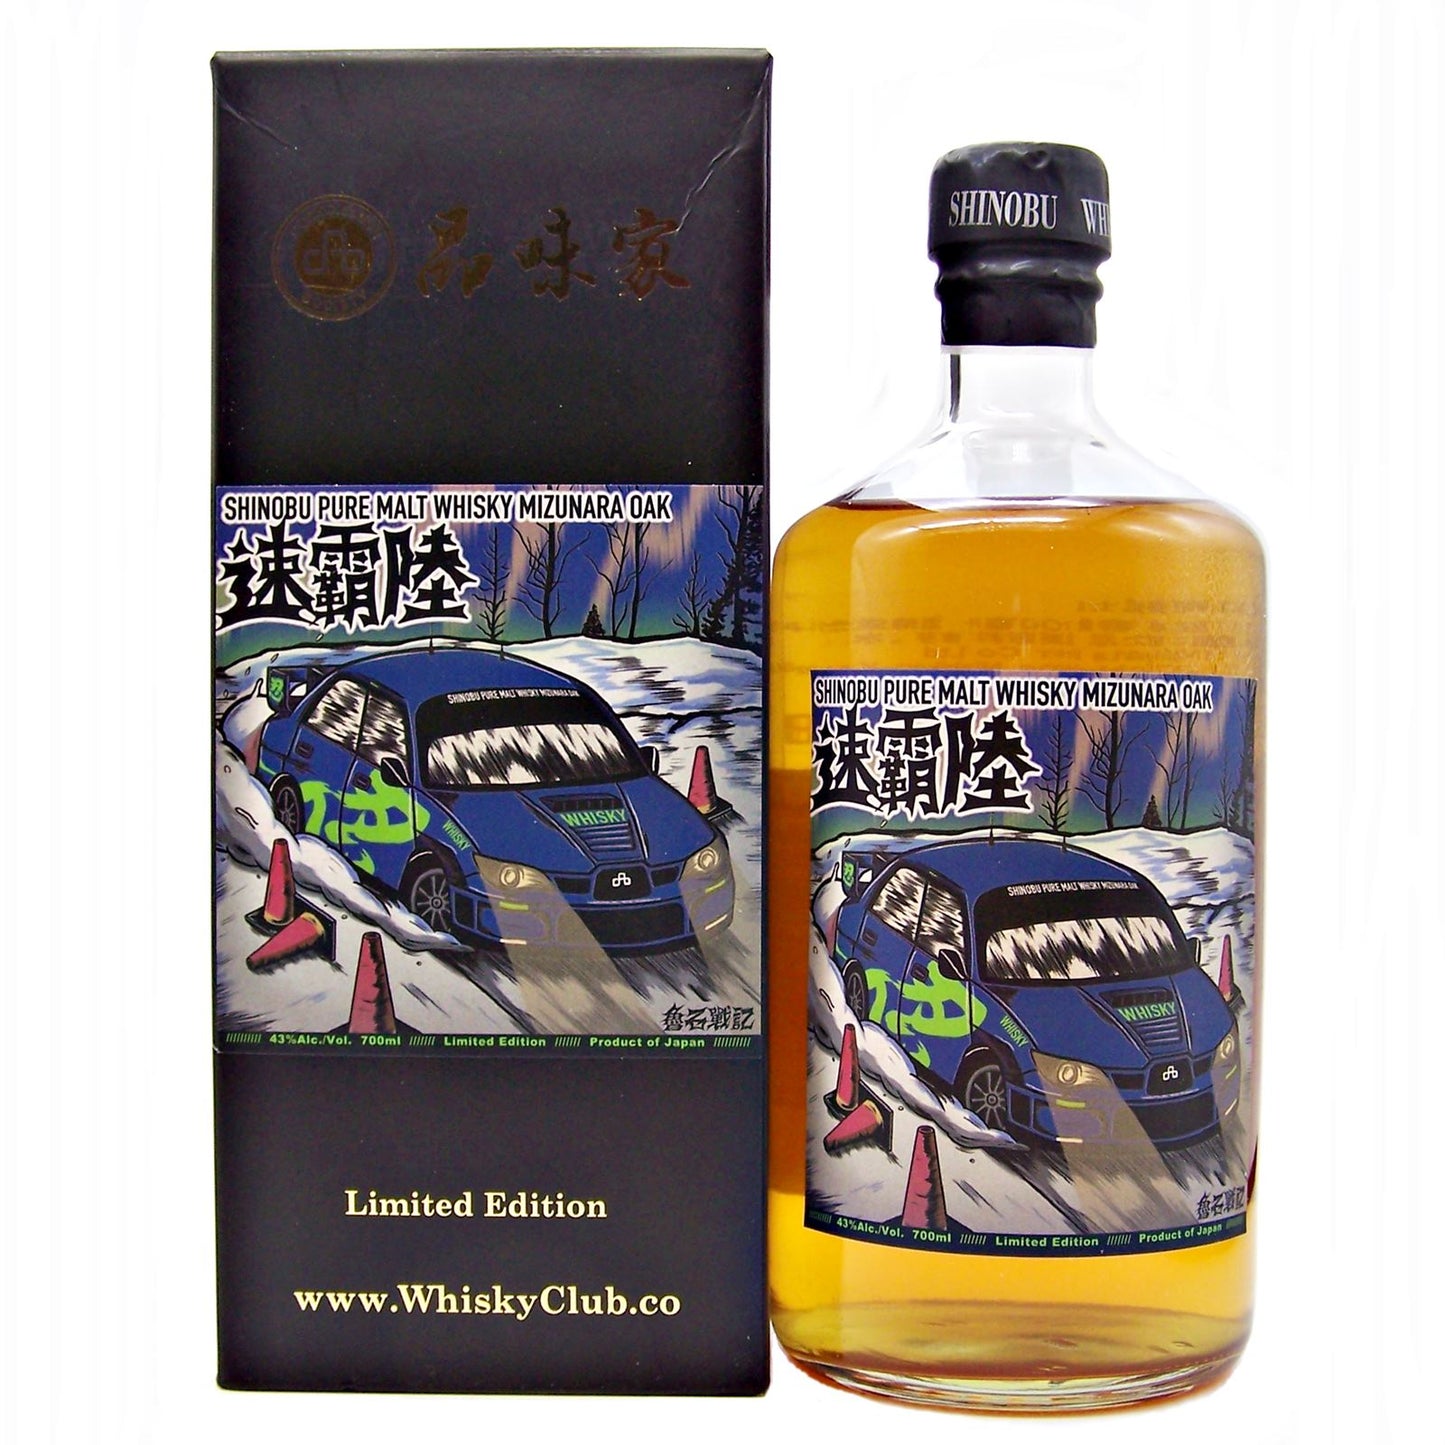 Shinobu Pure Malt Whisky Mizunara Oak